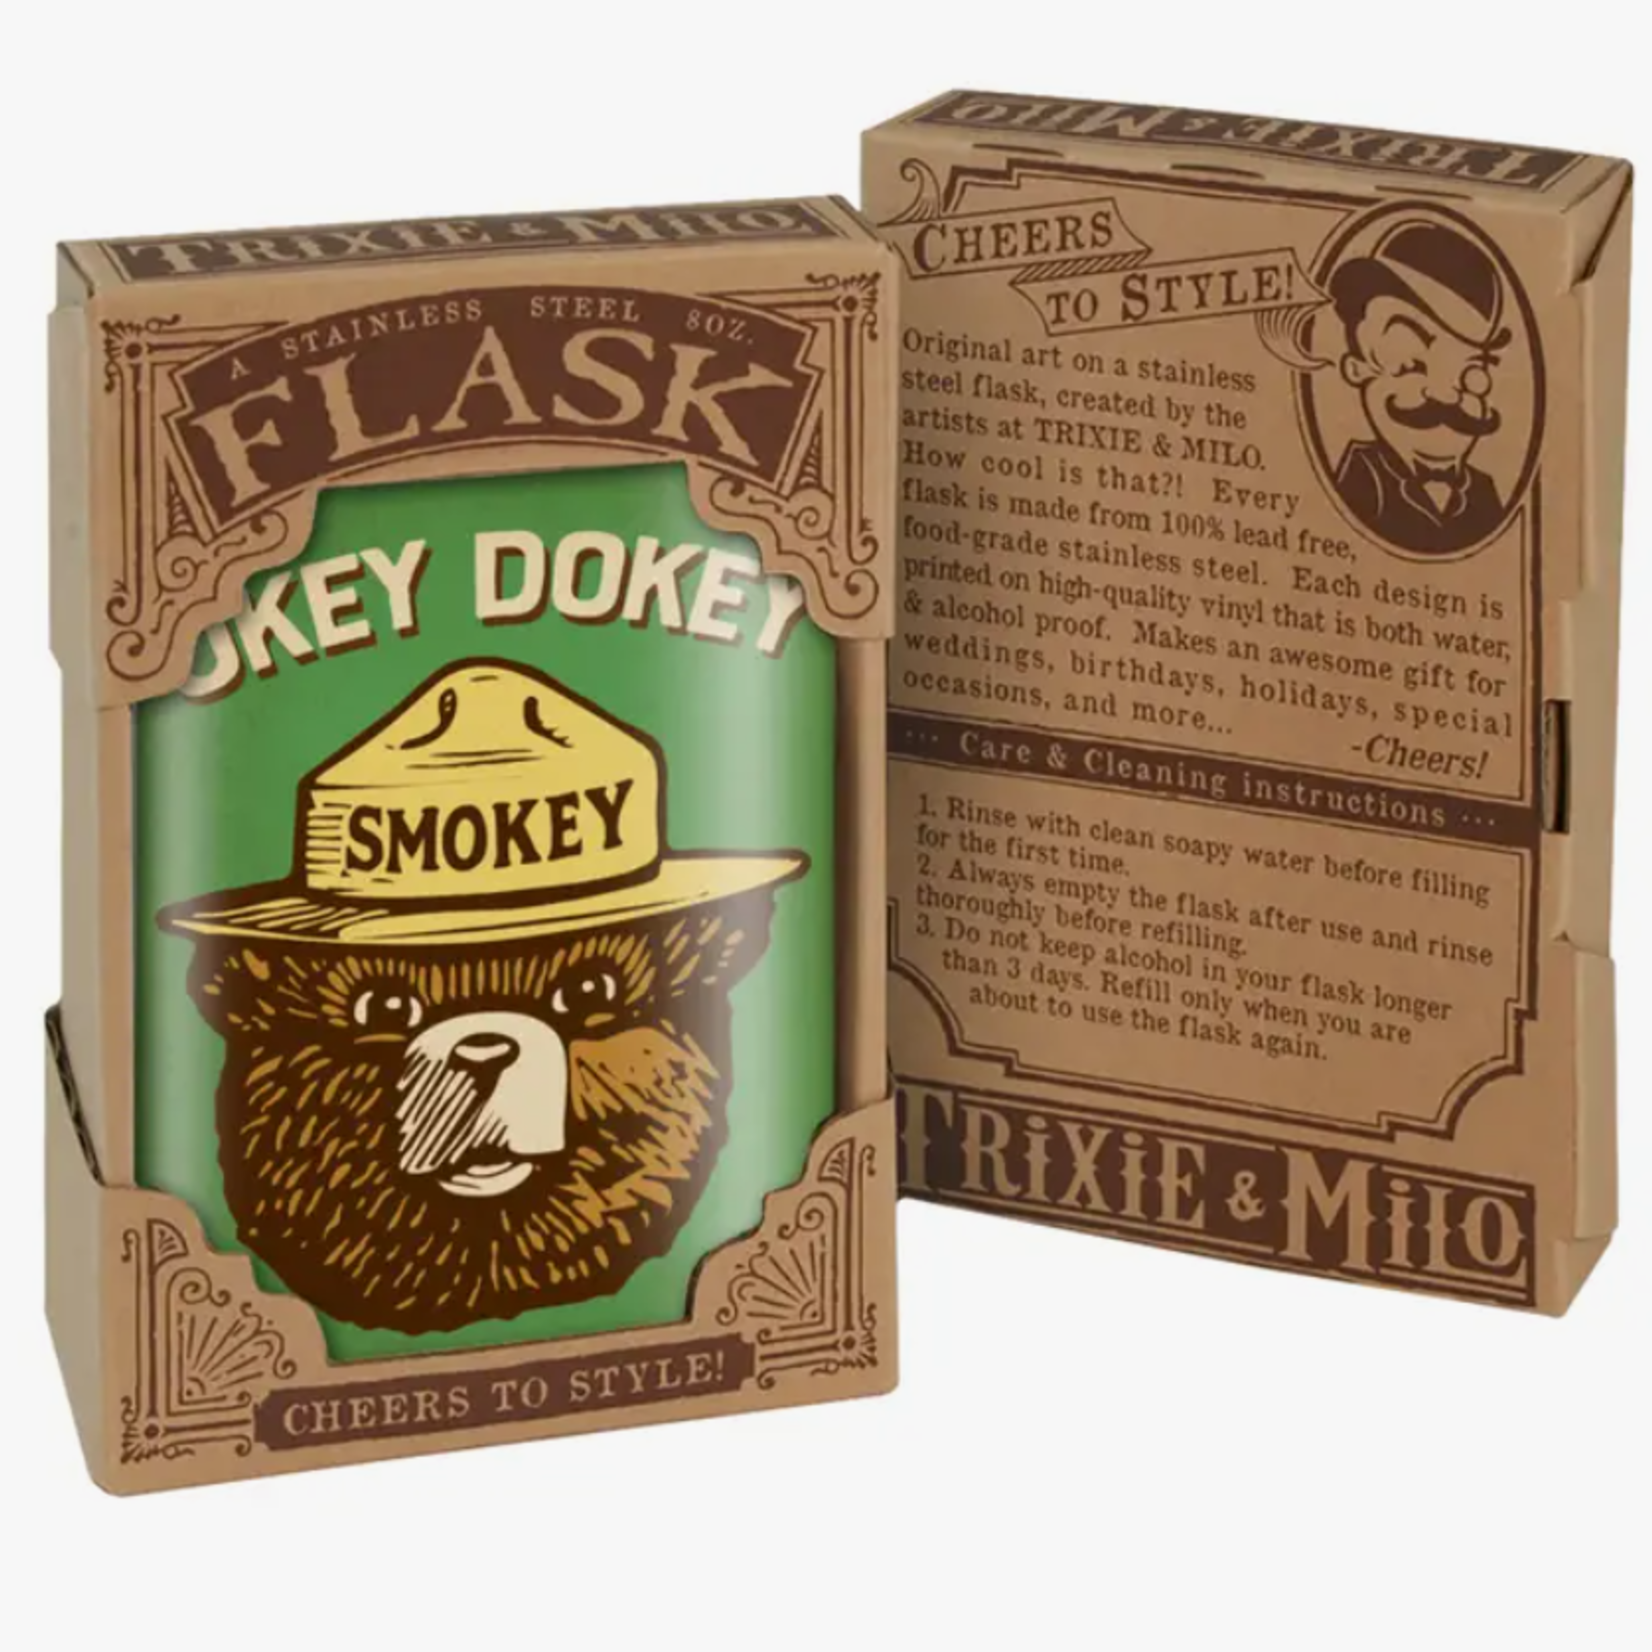 trixie & milo Okey Dokey Smokey Flask